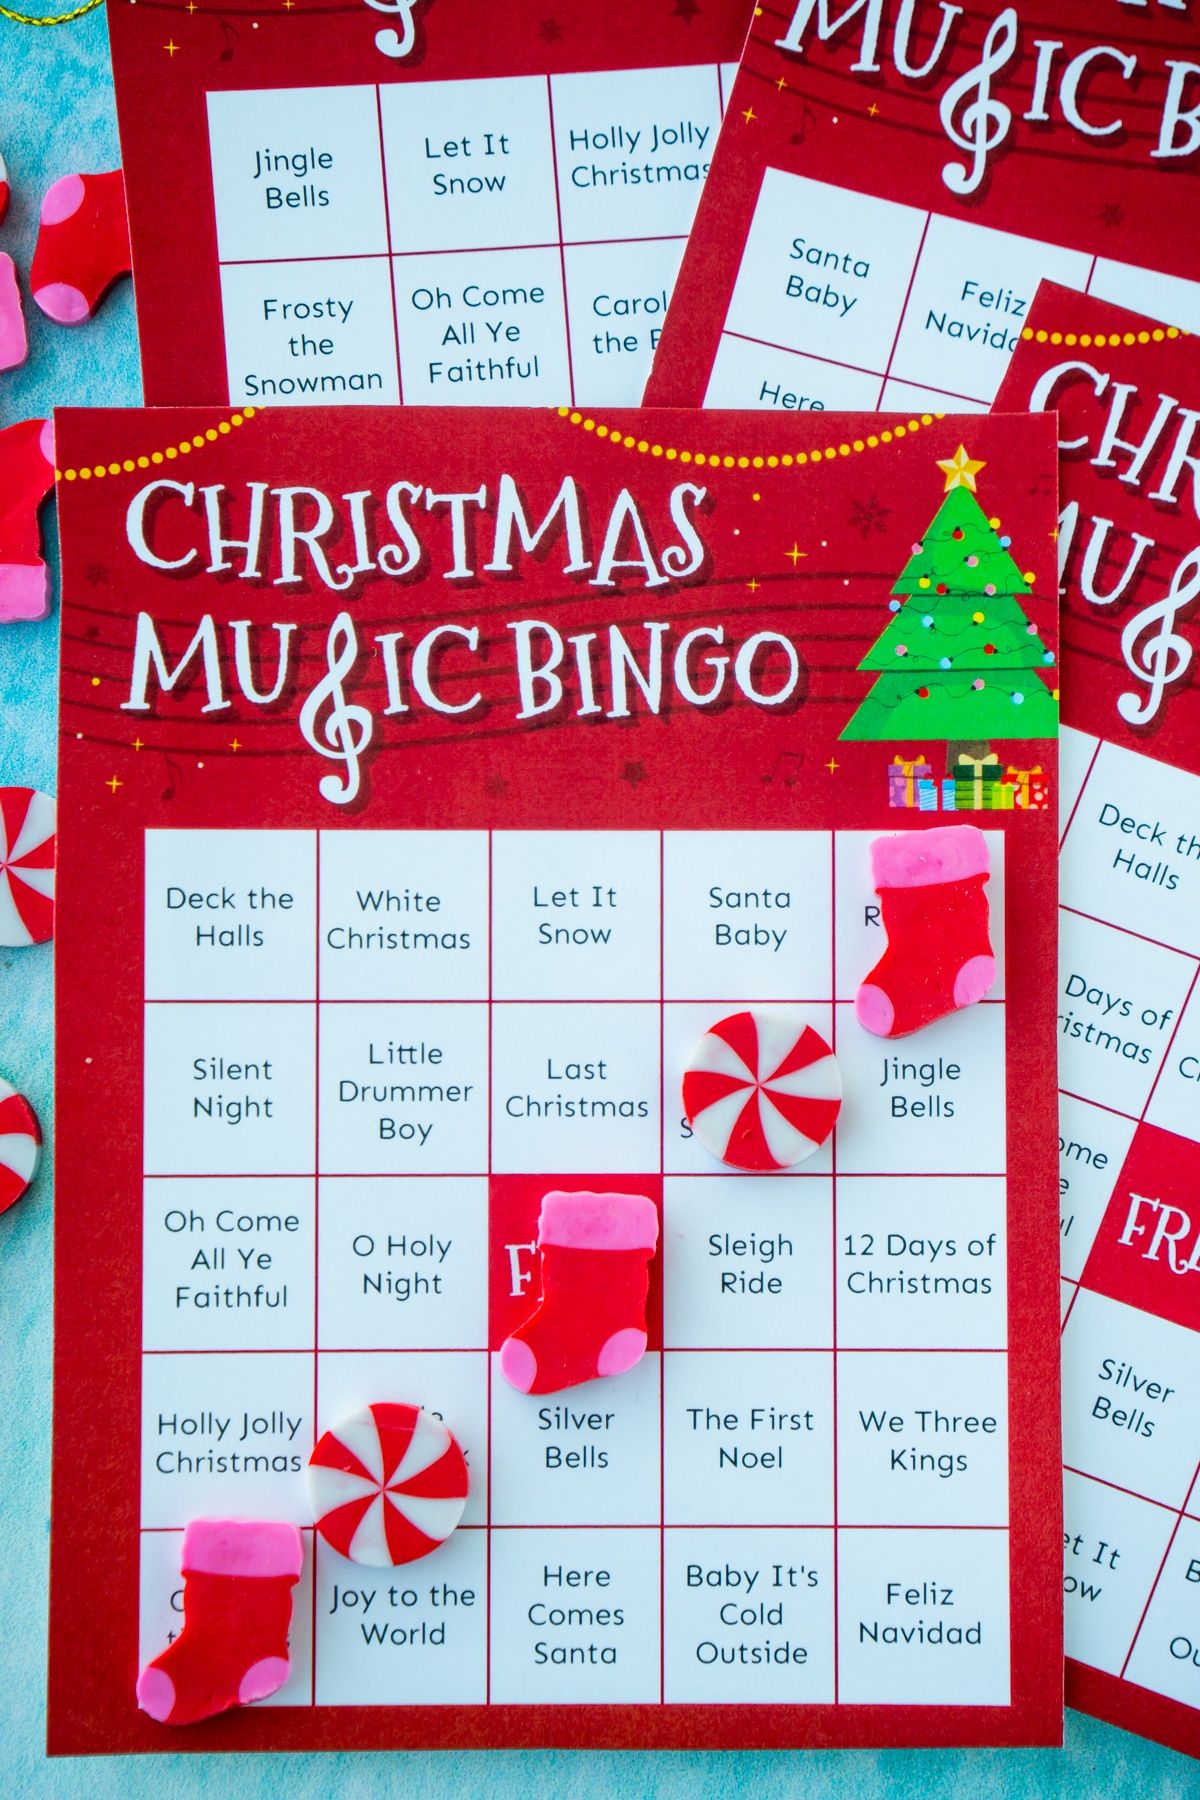 כרטיס בינגו למוזיקה לחג המולד עם בינגו העשוי ממחקי חג המולד